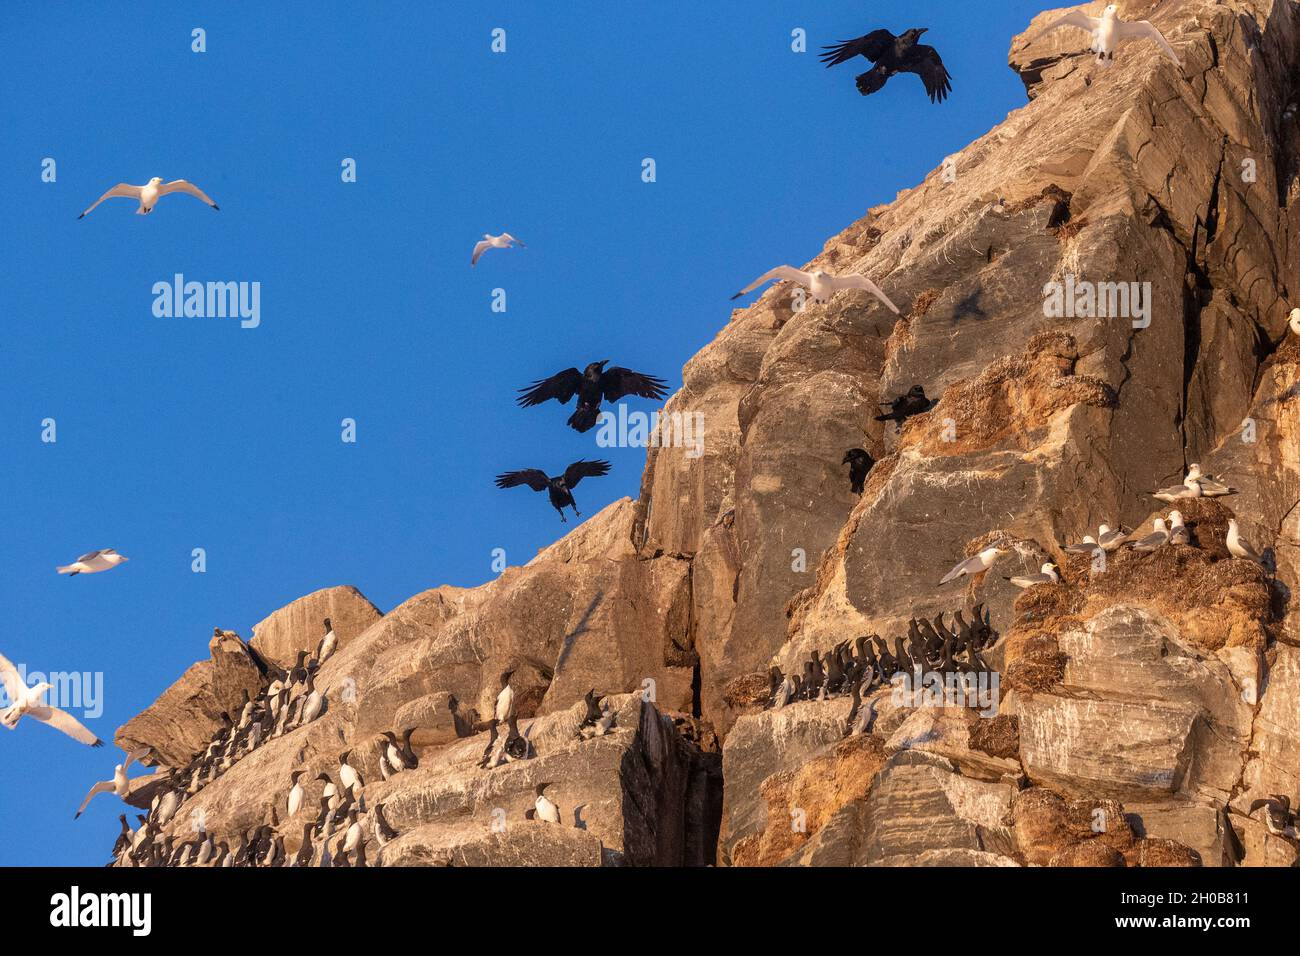 Corvo comune (Corvus corax), in volo, Predator di colonie di uccelli marini nelle scogliere, Isola di Horn oya, isola protetta con grandi colonie di uccelli marini Foto Stock